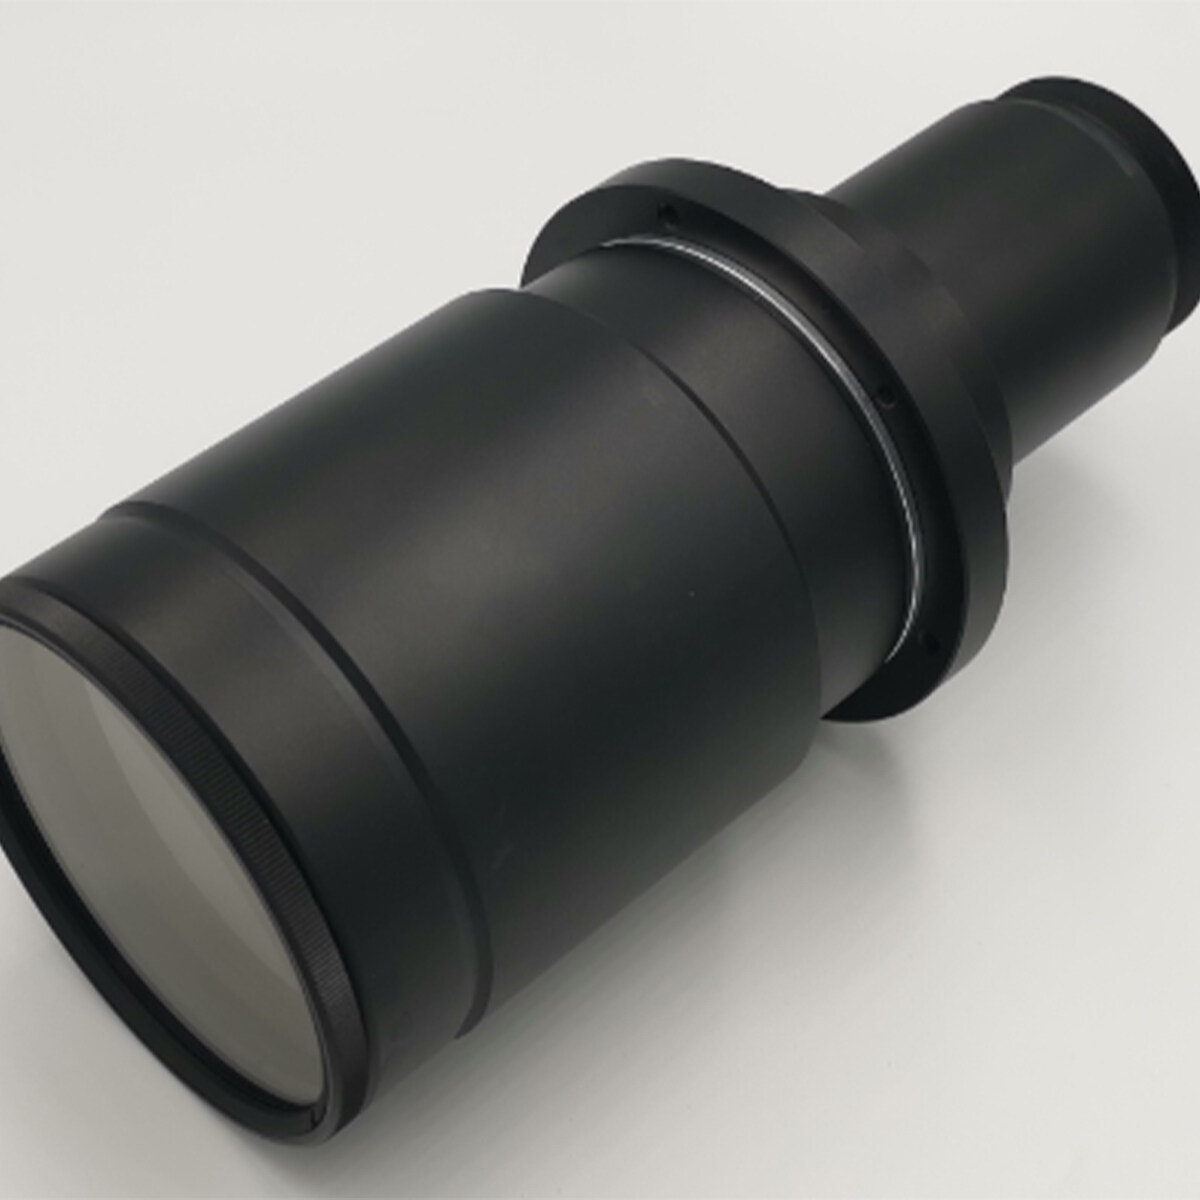 varifocal lens manufacturers, varifocal lens design, variable magnification telecentric lens